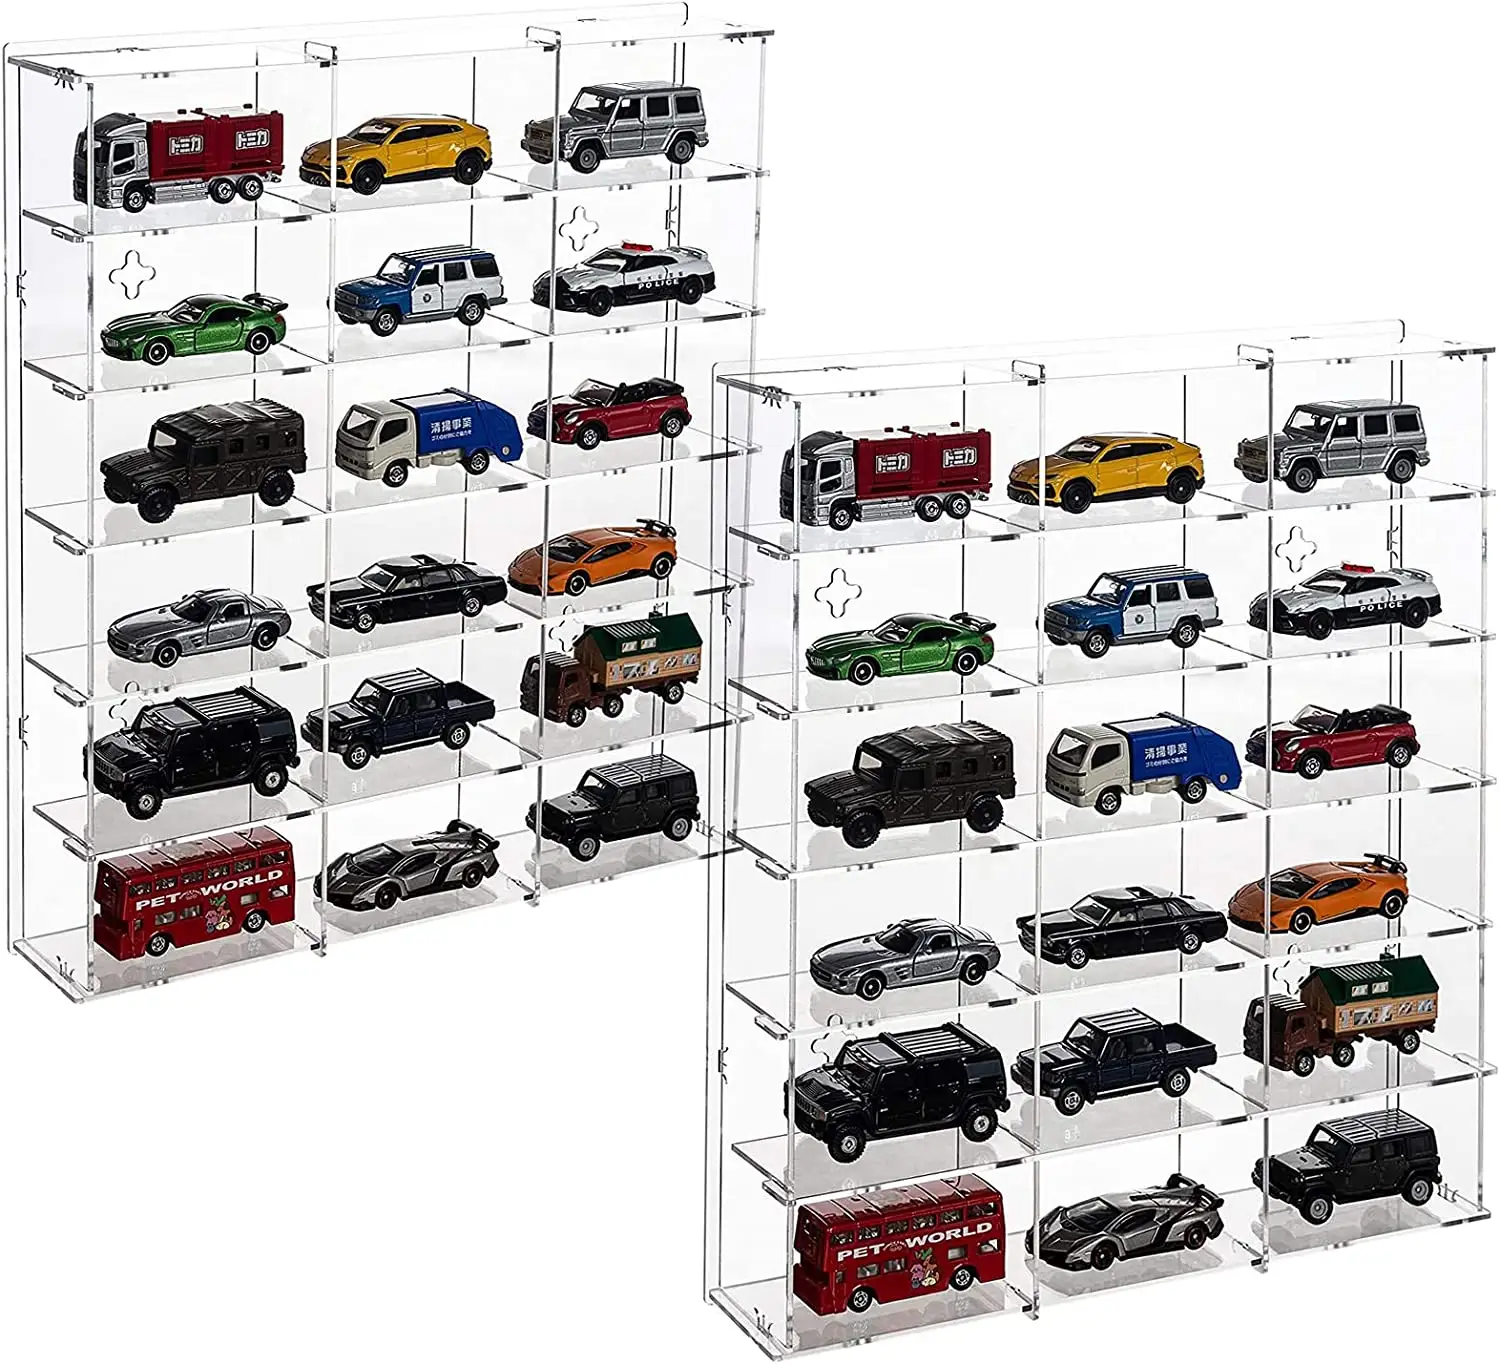 Caixa de exibição acrílica para 1/18 escala diecast modelo hot wheels carros de brinquedo 4 espaços expositor estande